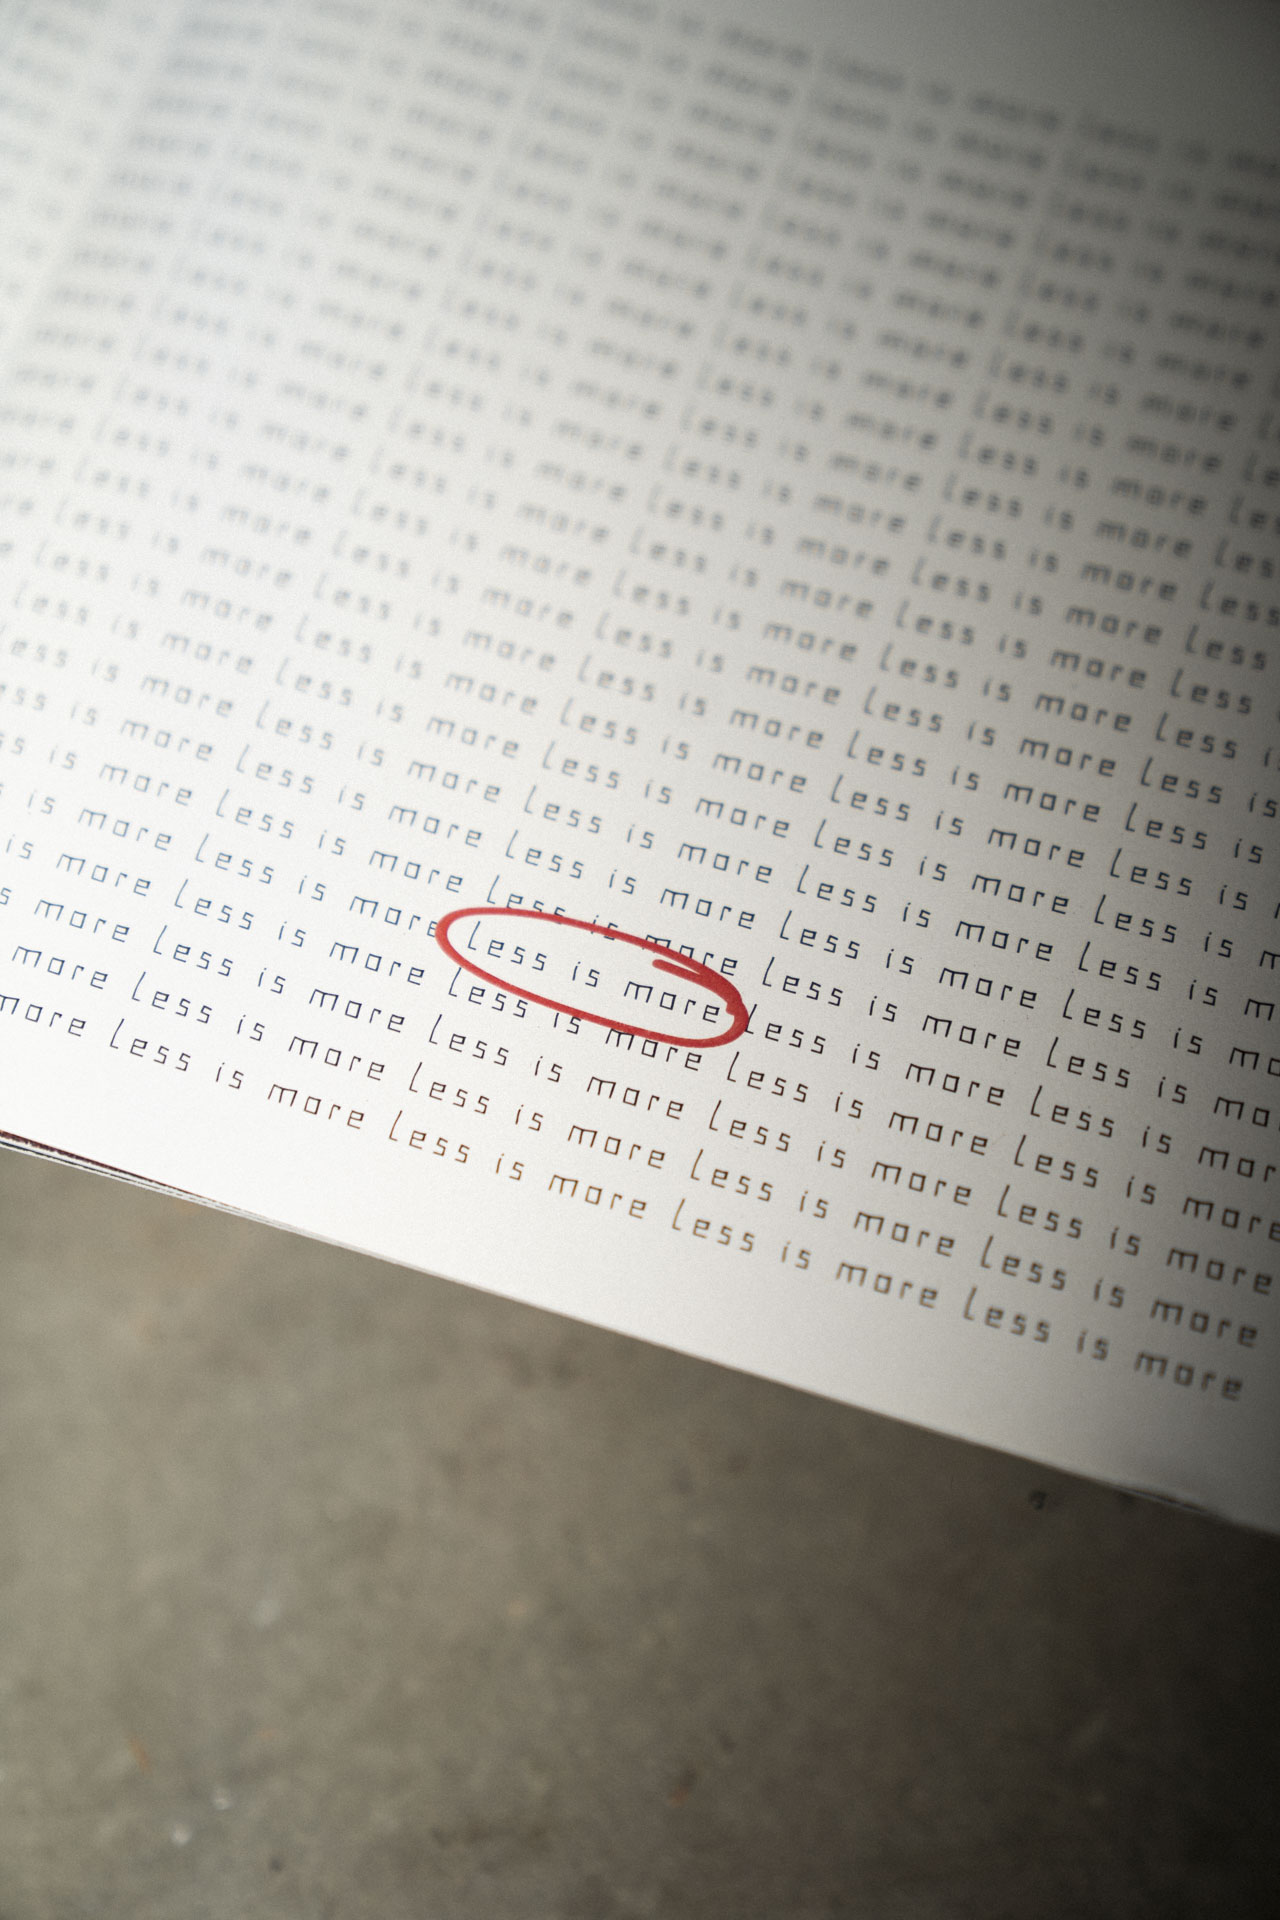 Detailaufnahme von einem geöffneten typografischen Zine auf einem Metallregal mit harten Licht.